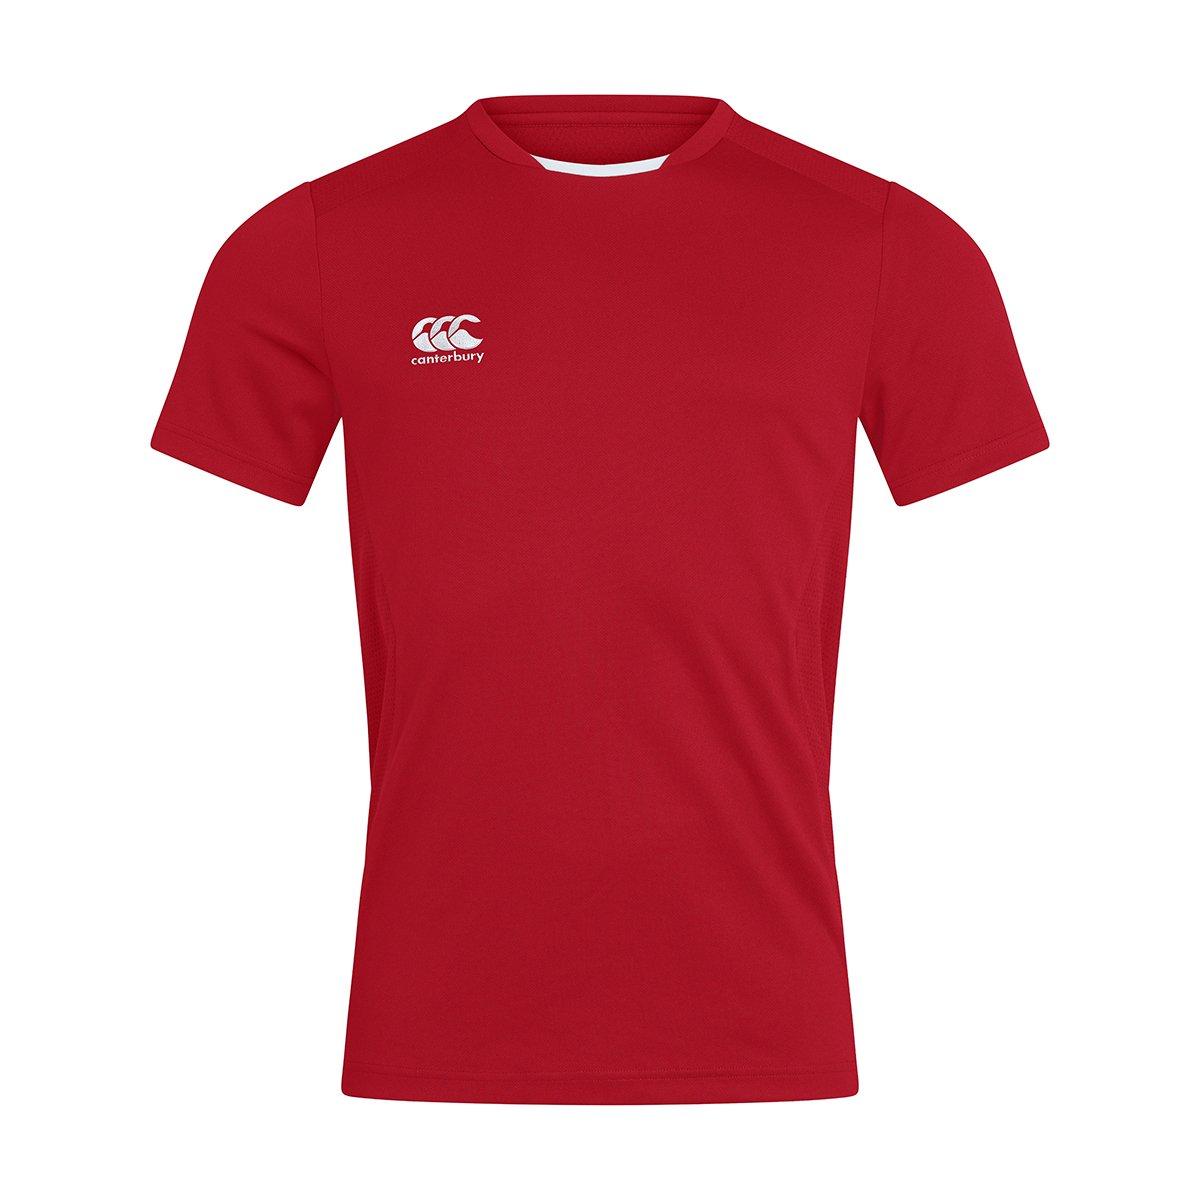 Club Dry Tshirt Herren Rot Bunt M von Canterbury